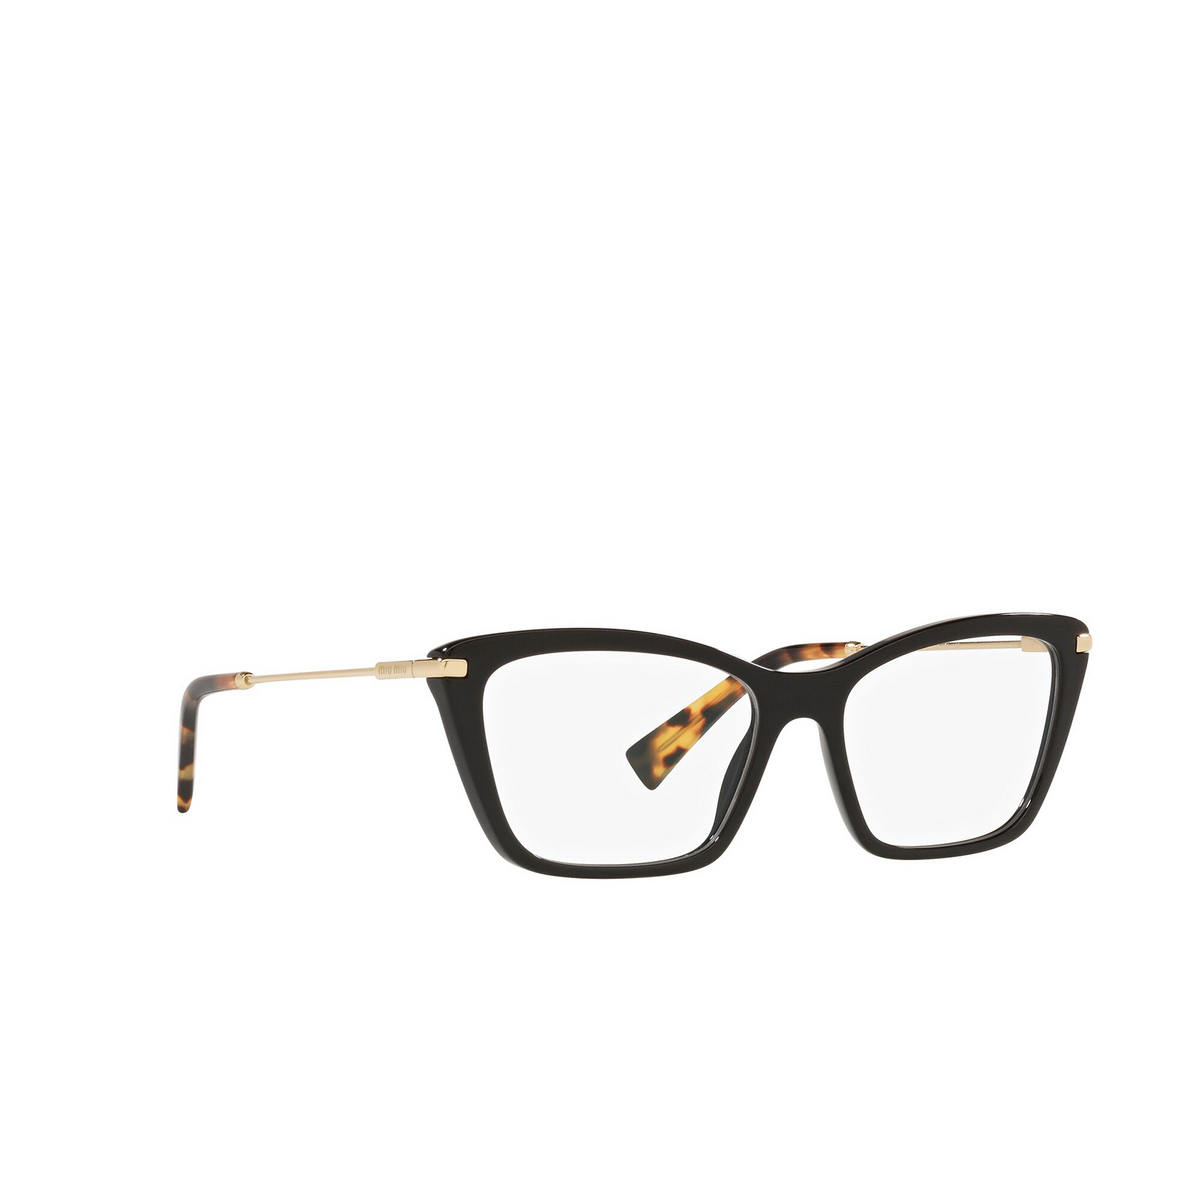 Miu Miu® Cat-eye Eyeglasses: MU 01UV color Black 1AB1O1 - three-quarters view.